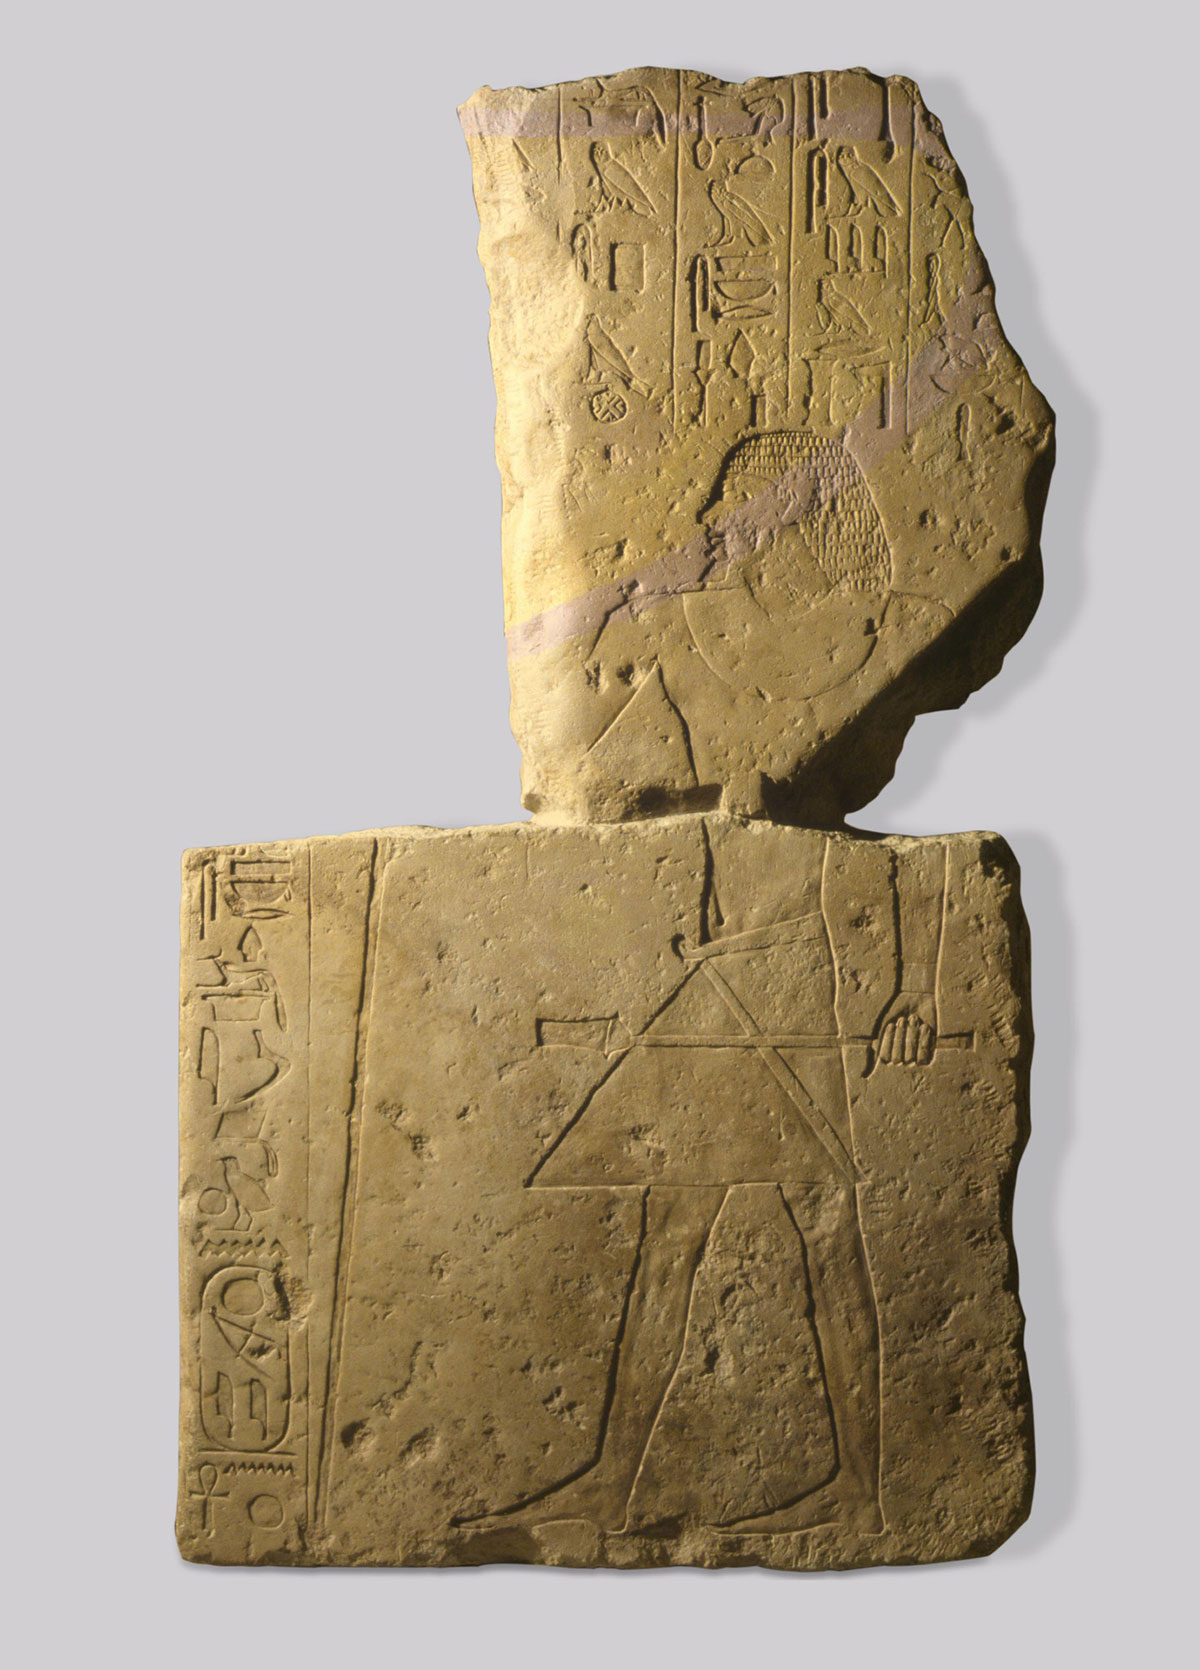 Рельеф из Гробницы Мерираанха в зале Древнего Египта Эрмитажа, XXIV–XXIII вв. до н. э.